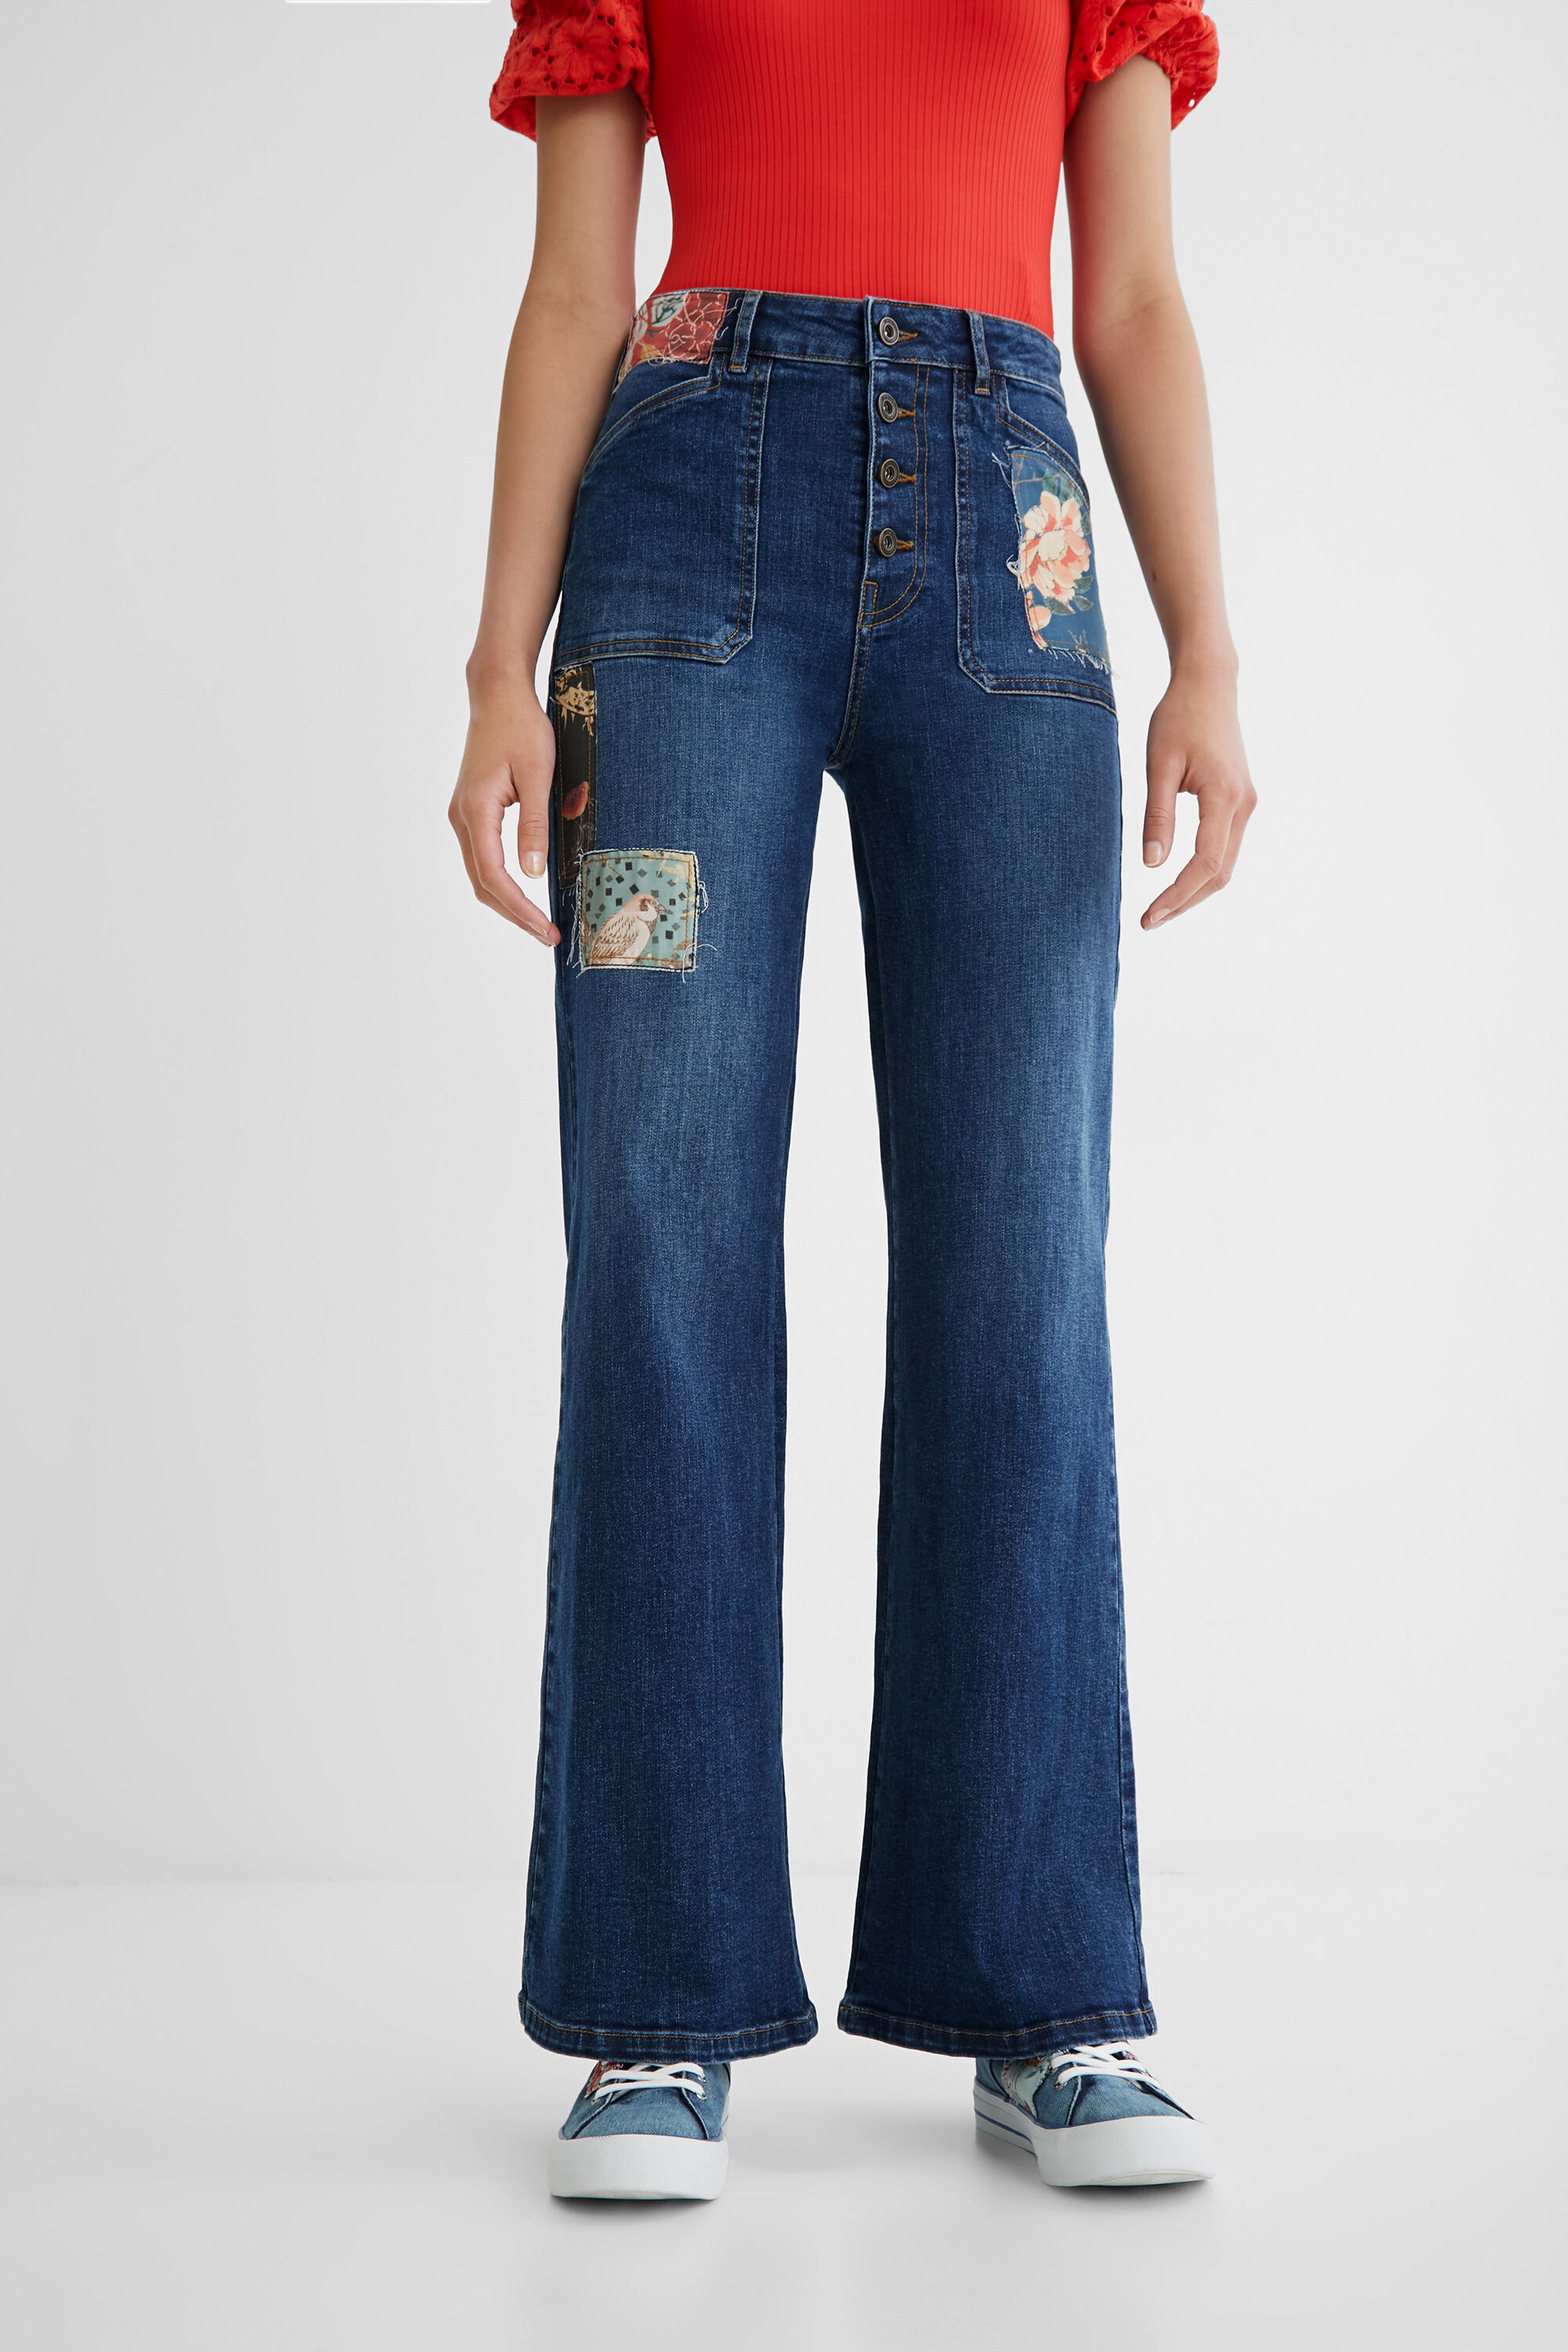 Jeans wide leg patch - BLUE - 36